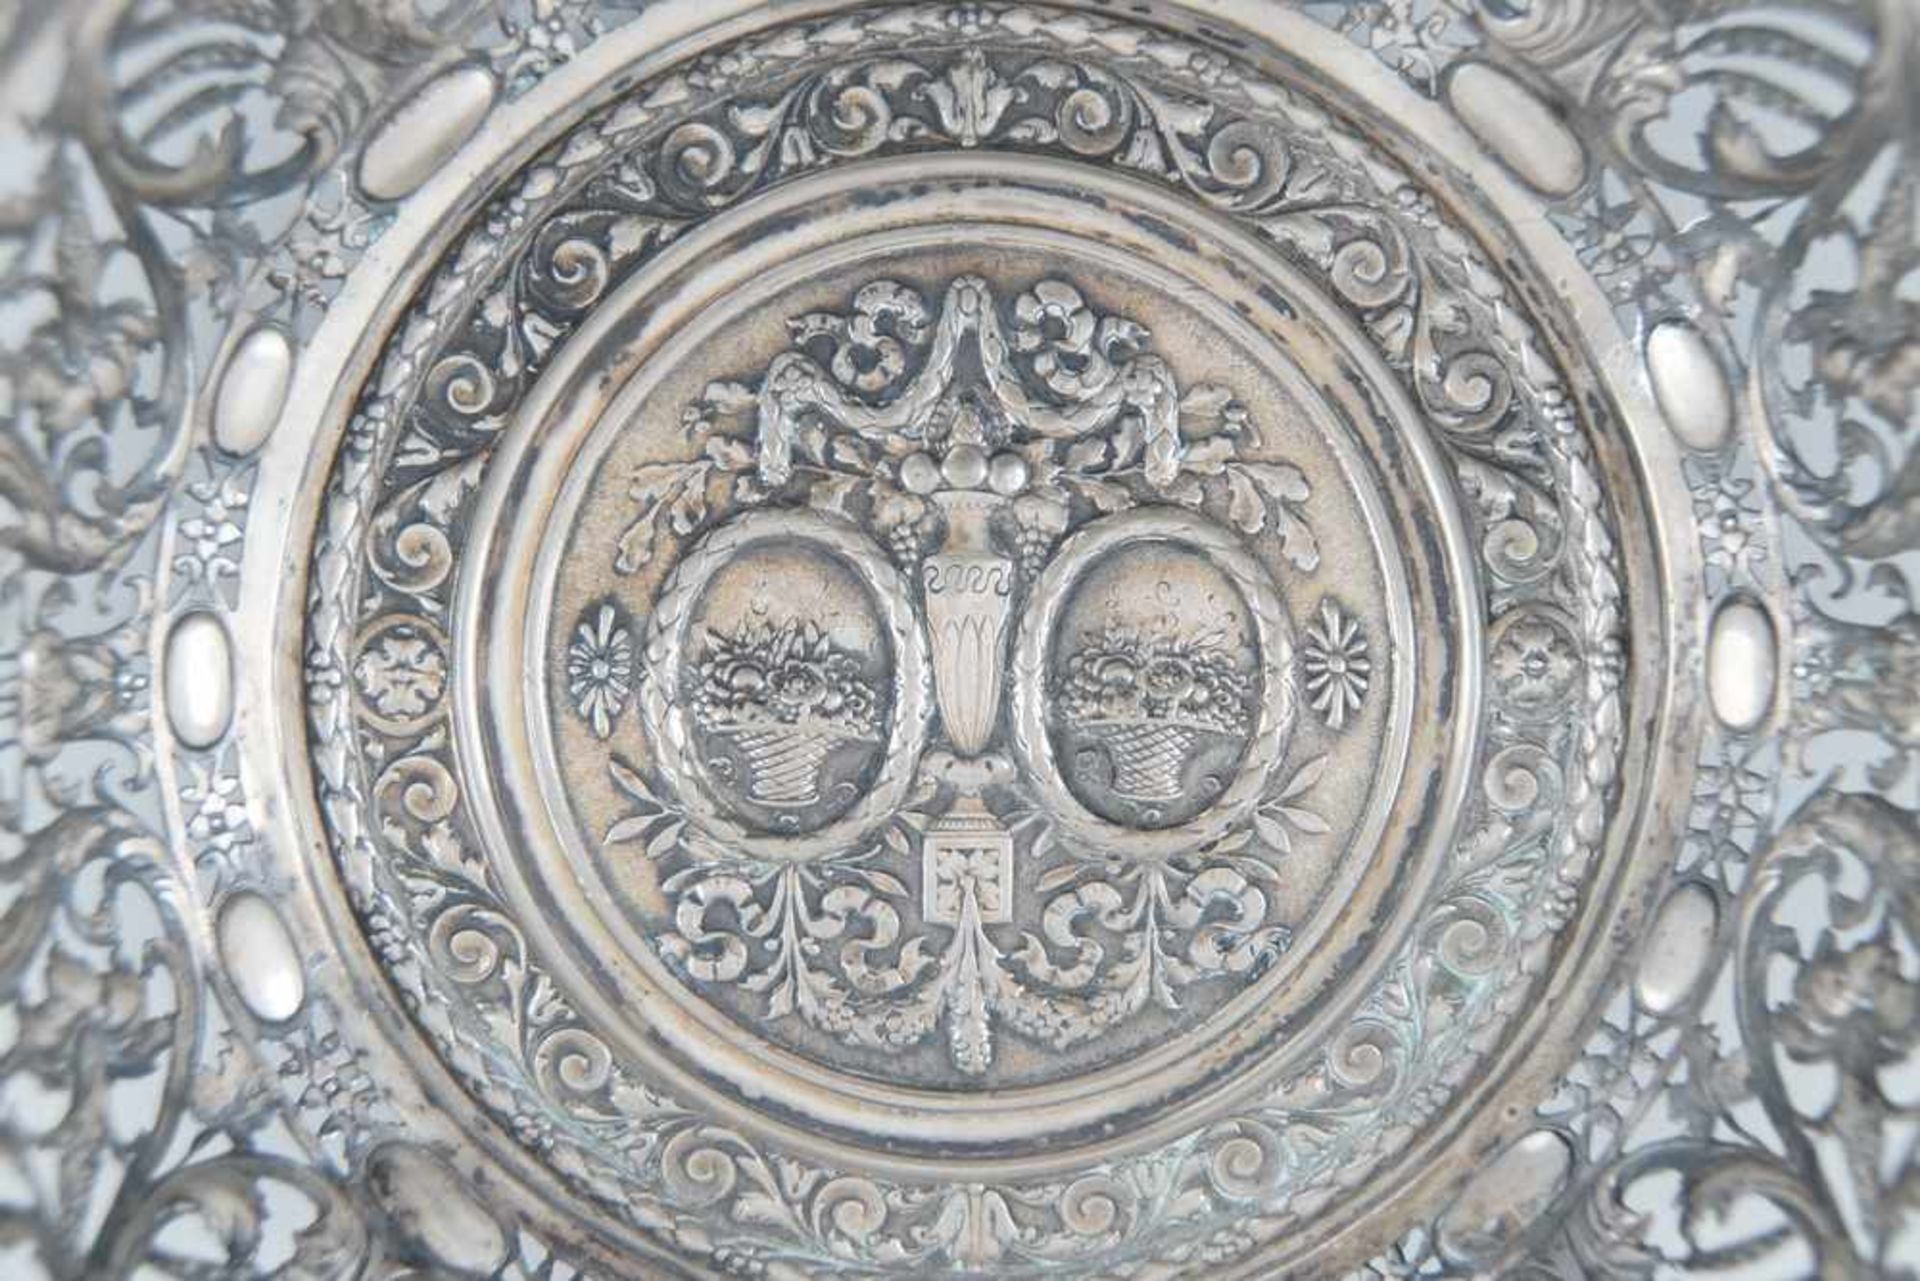 Fein getriebene Silber Henkelschale mit filigranen Reliefs, durchbrochen gearbeitet,gepunzt, - Bild 4 aus 7